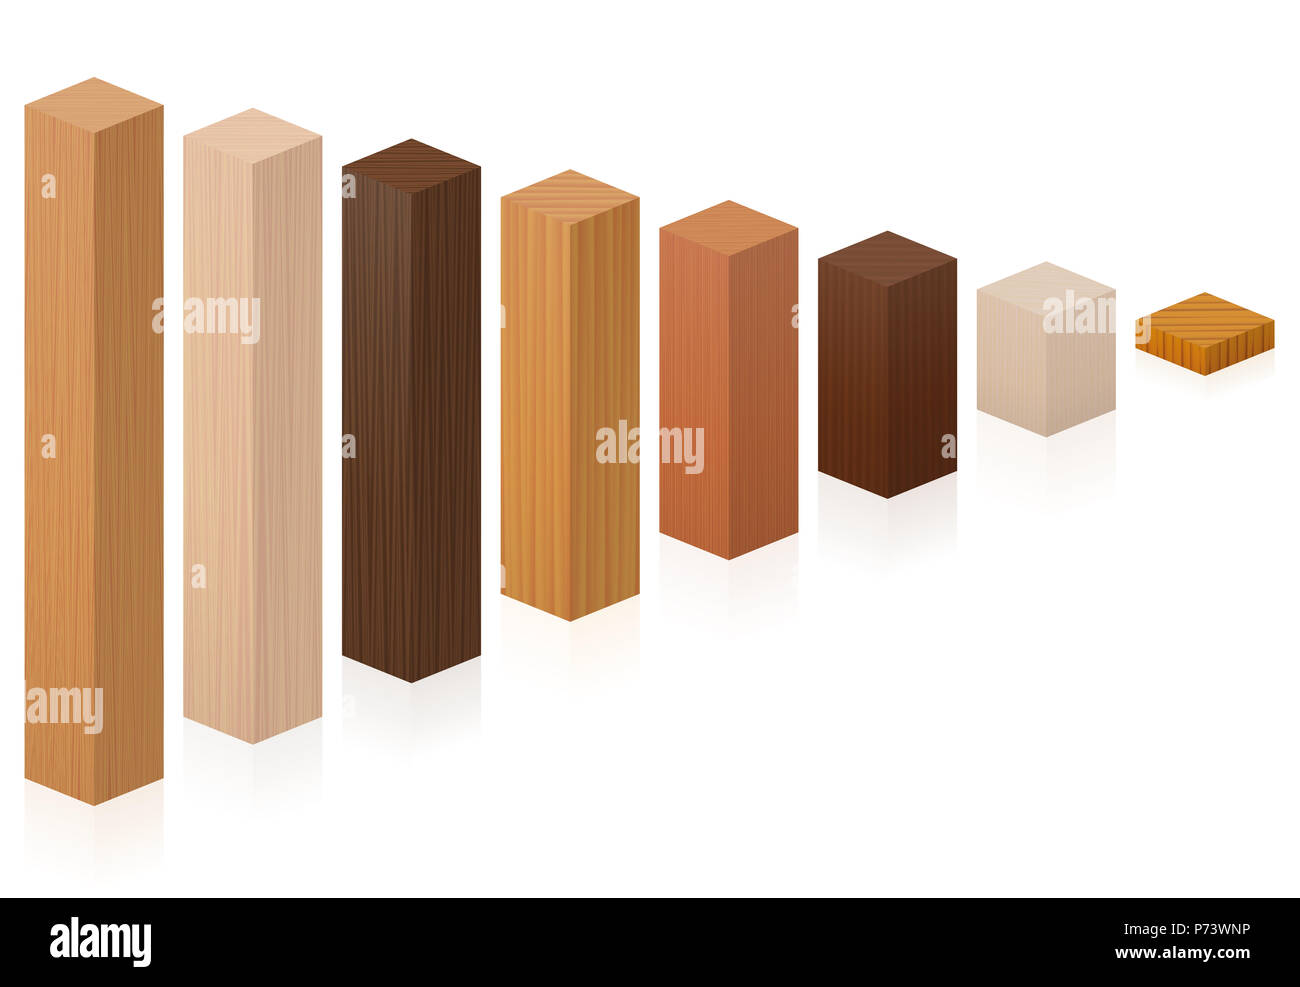 Morceaux de différents types de bois de plus en plus courts - blocs de bois de divers arbres - illustration sur fond blanc. Banque D'Images